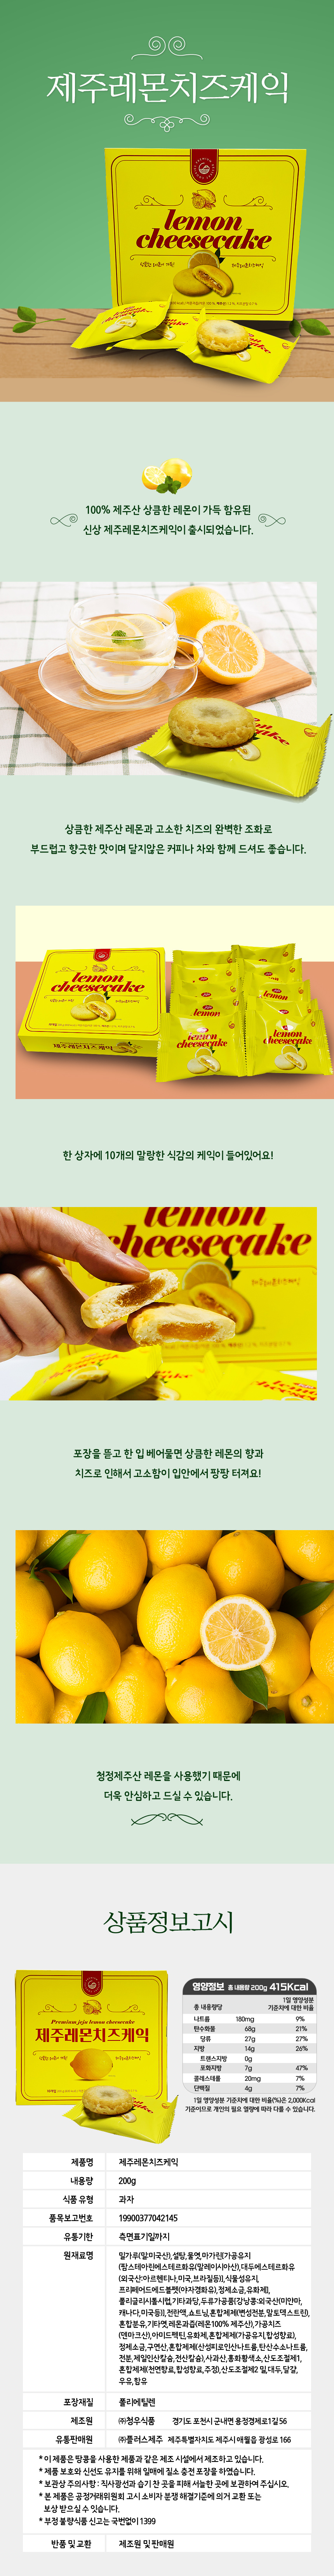 제주 (우도땅콩찰떡 당근 청귤 레몬치즈케익) 파이 상세